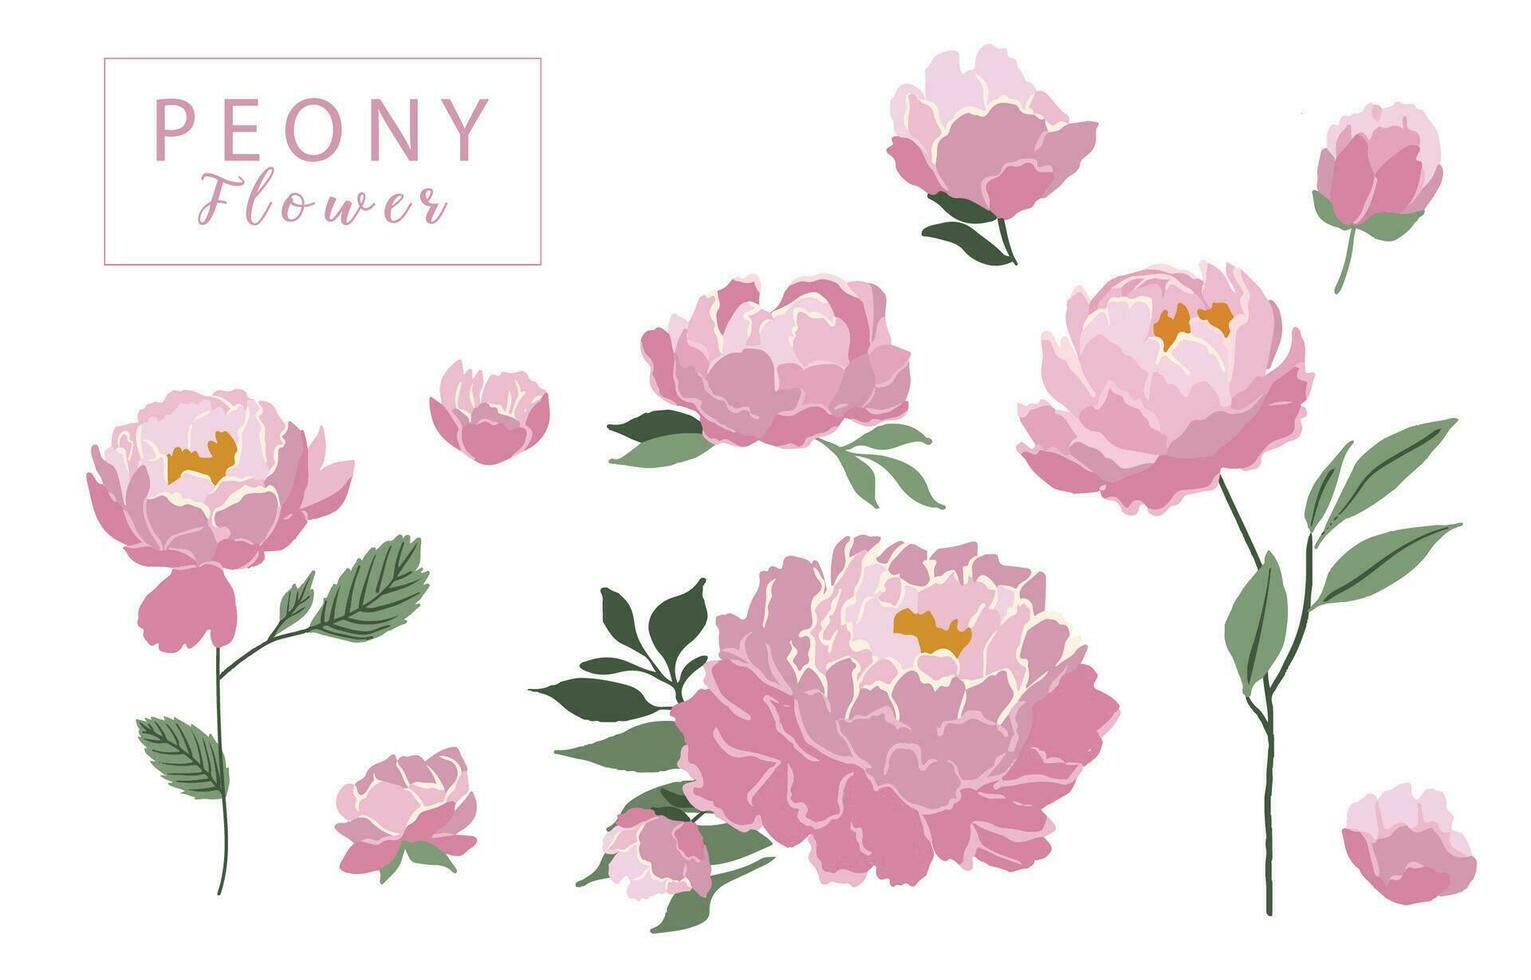 bloem verzameling met roze pioen element.vector illustratie voor pictogram, sticker, afdrukbaar vector